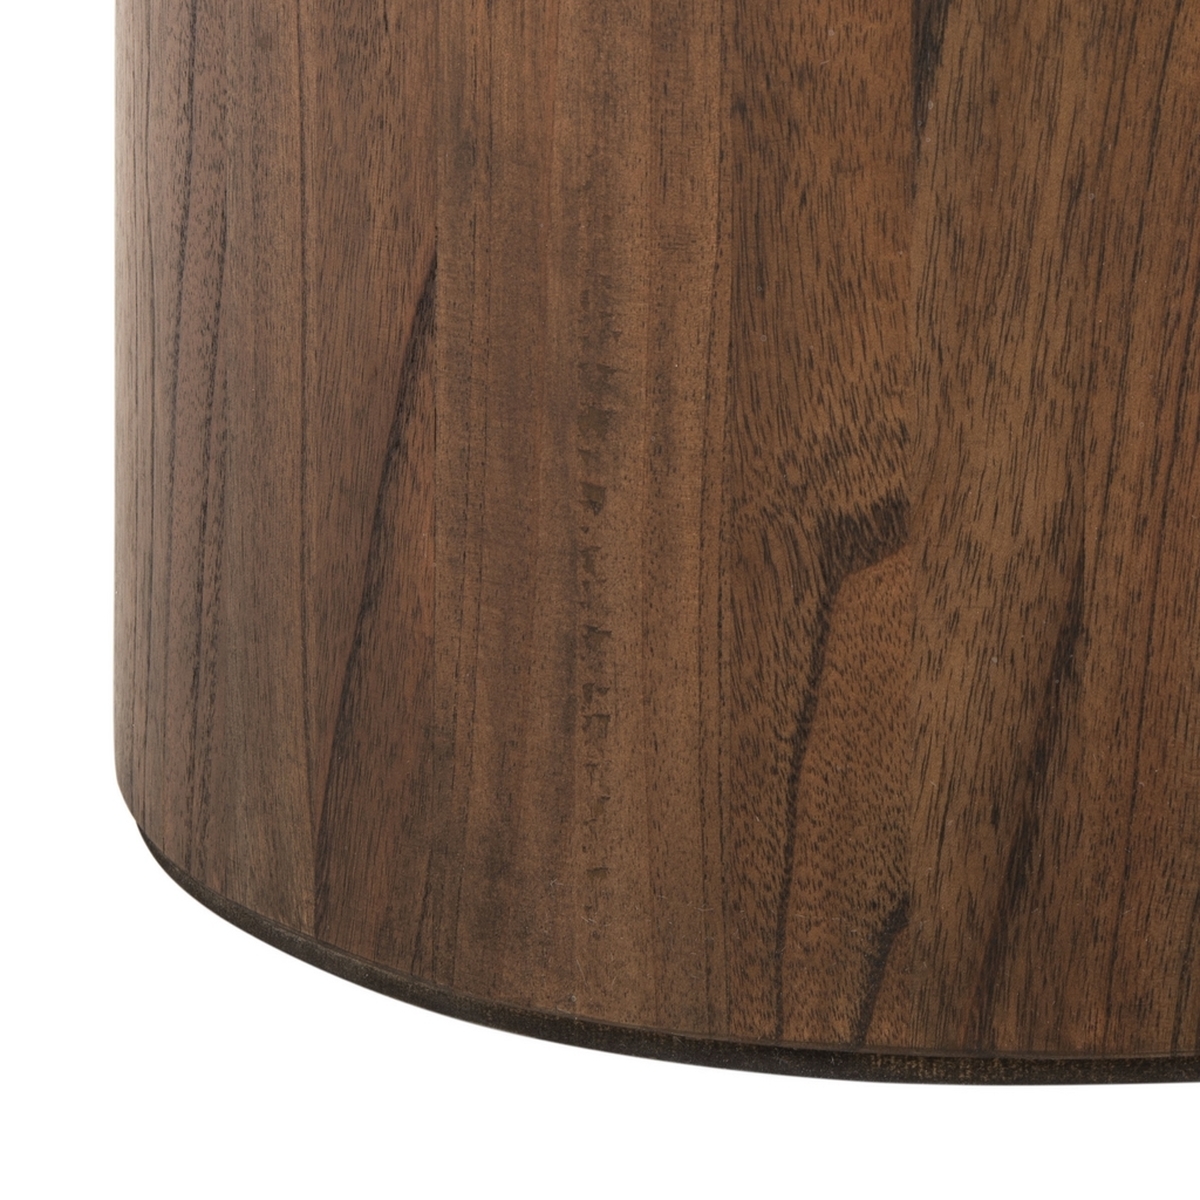 Devin Round Pedestal Coffee Table, Dark Walnut - Image 3